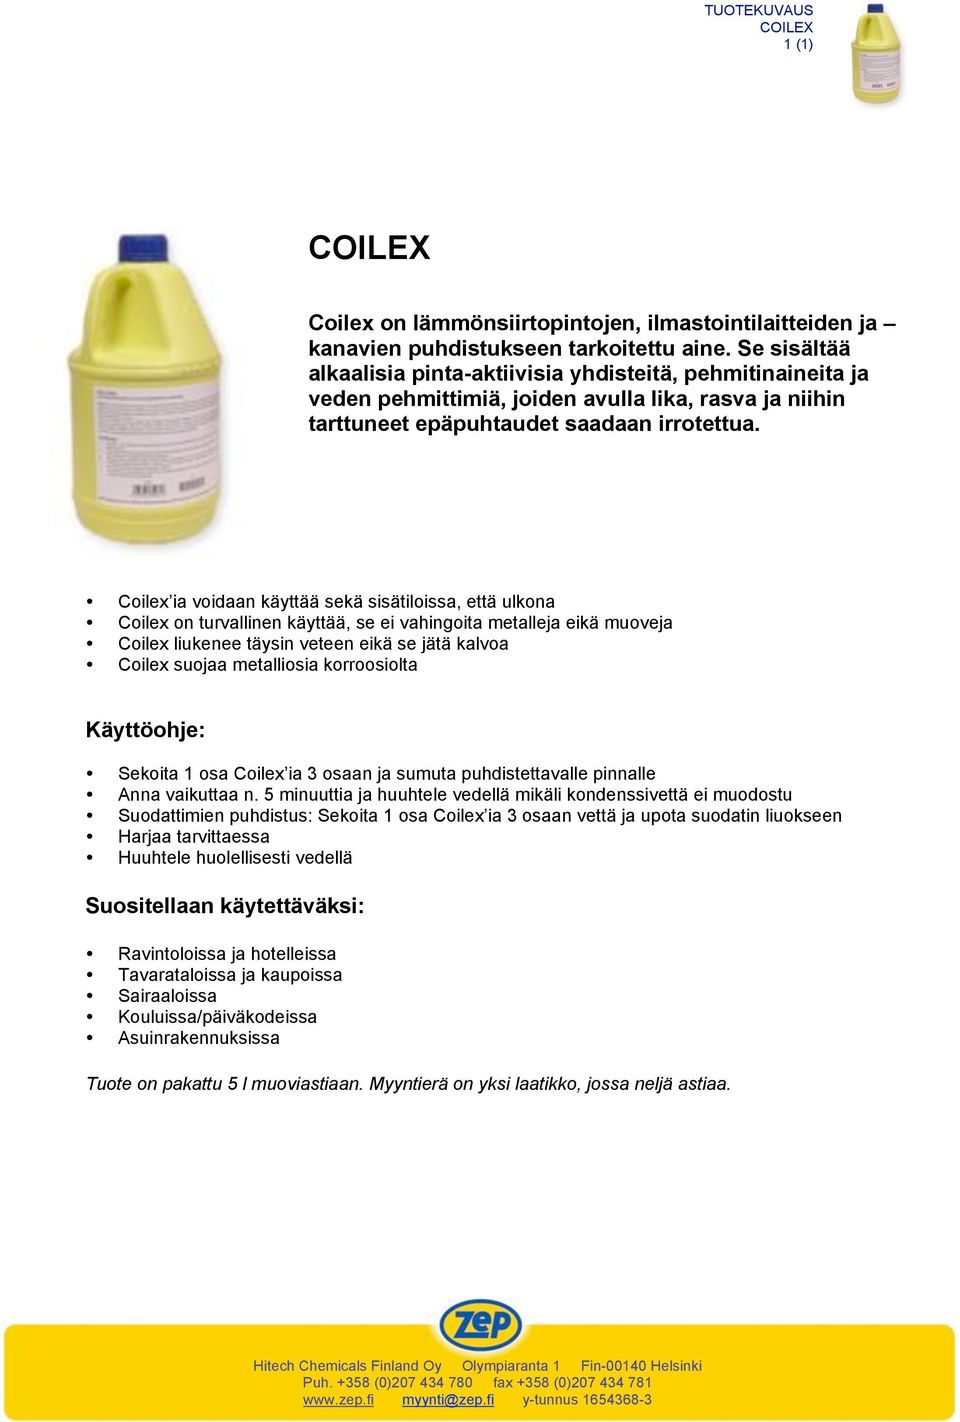 Coilex ia voidaan käyttää sekä sisätiloissa, että ulkona Coilex on turvallinen käyttää, se ei vahingoita metalleja eikä muoveja Coilex liukenee täysin veteen eikä se jätä kalvoa Coilex suojaa